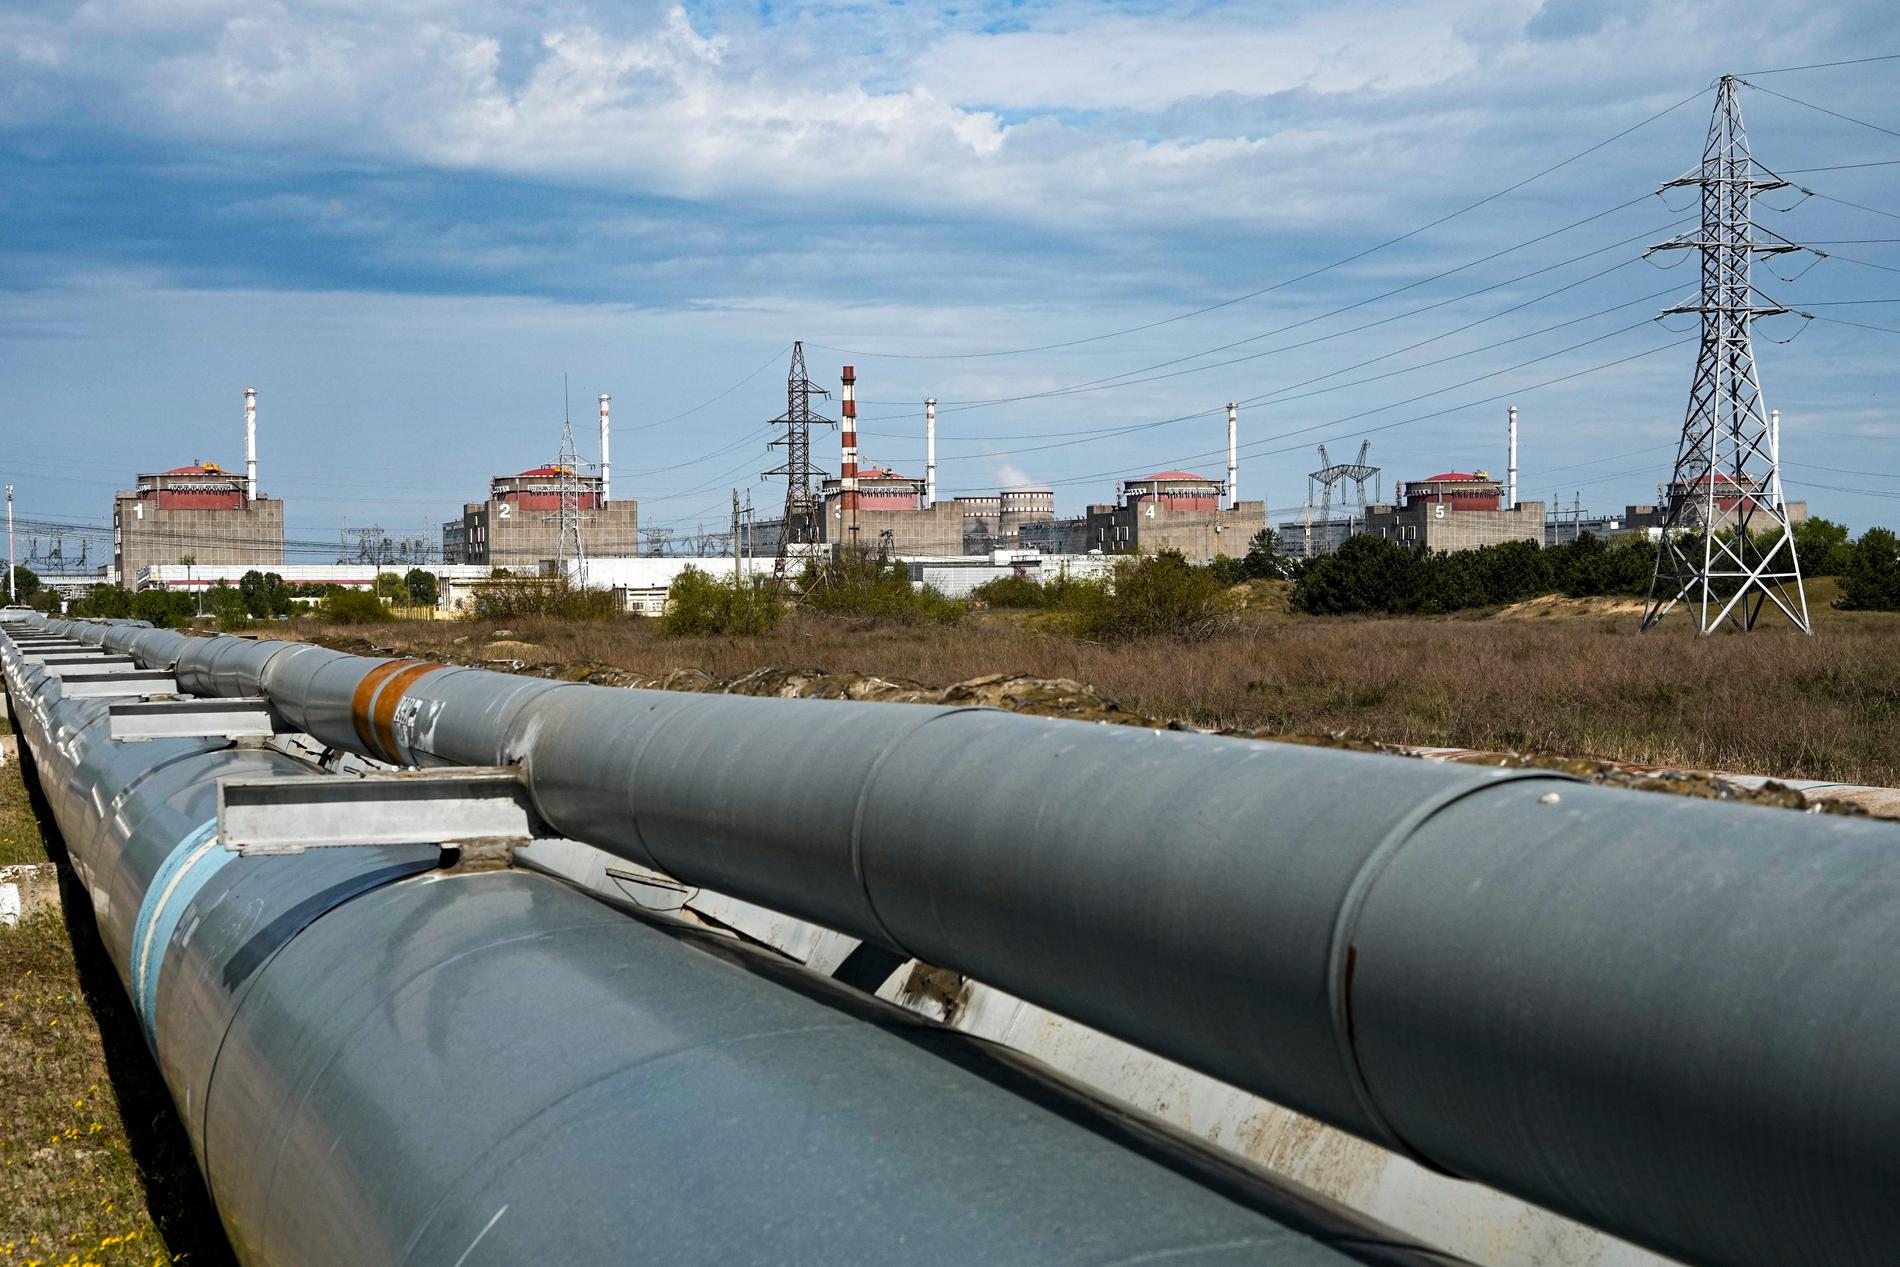 bränsle finns i tio dygn till för att kyla Zaporizjzjas reaktorer.